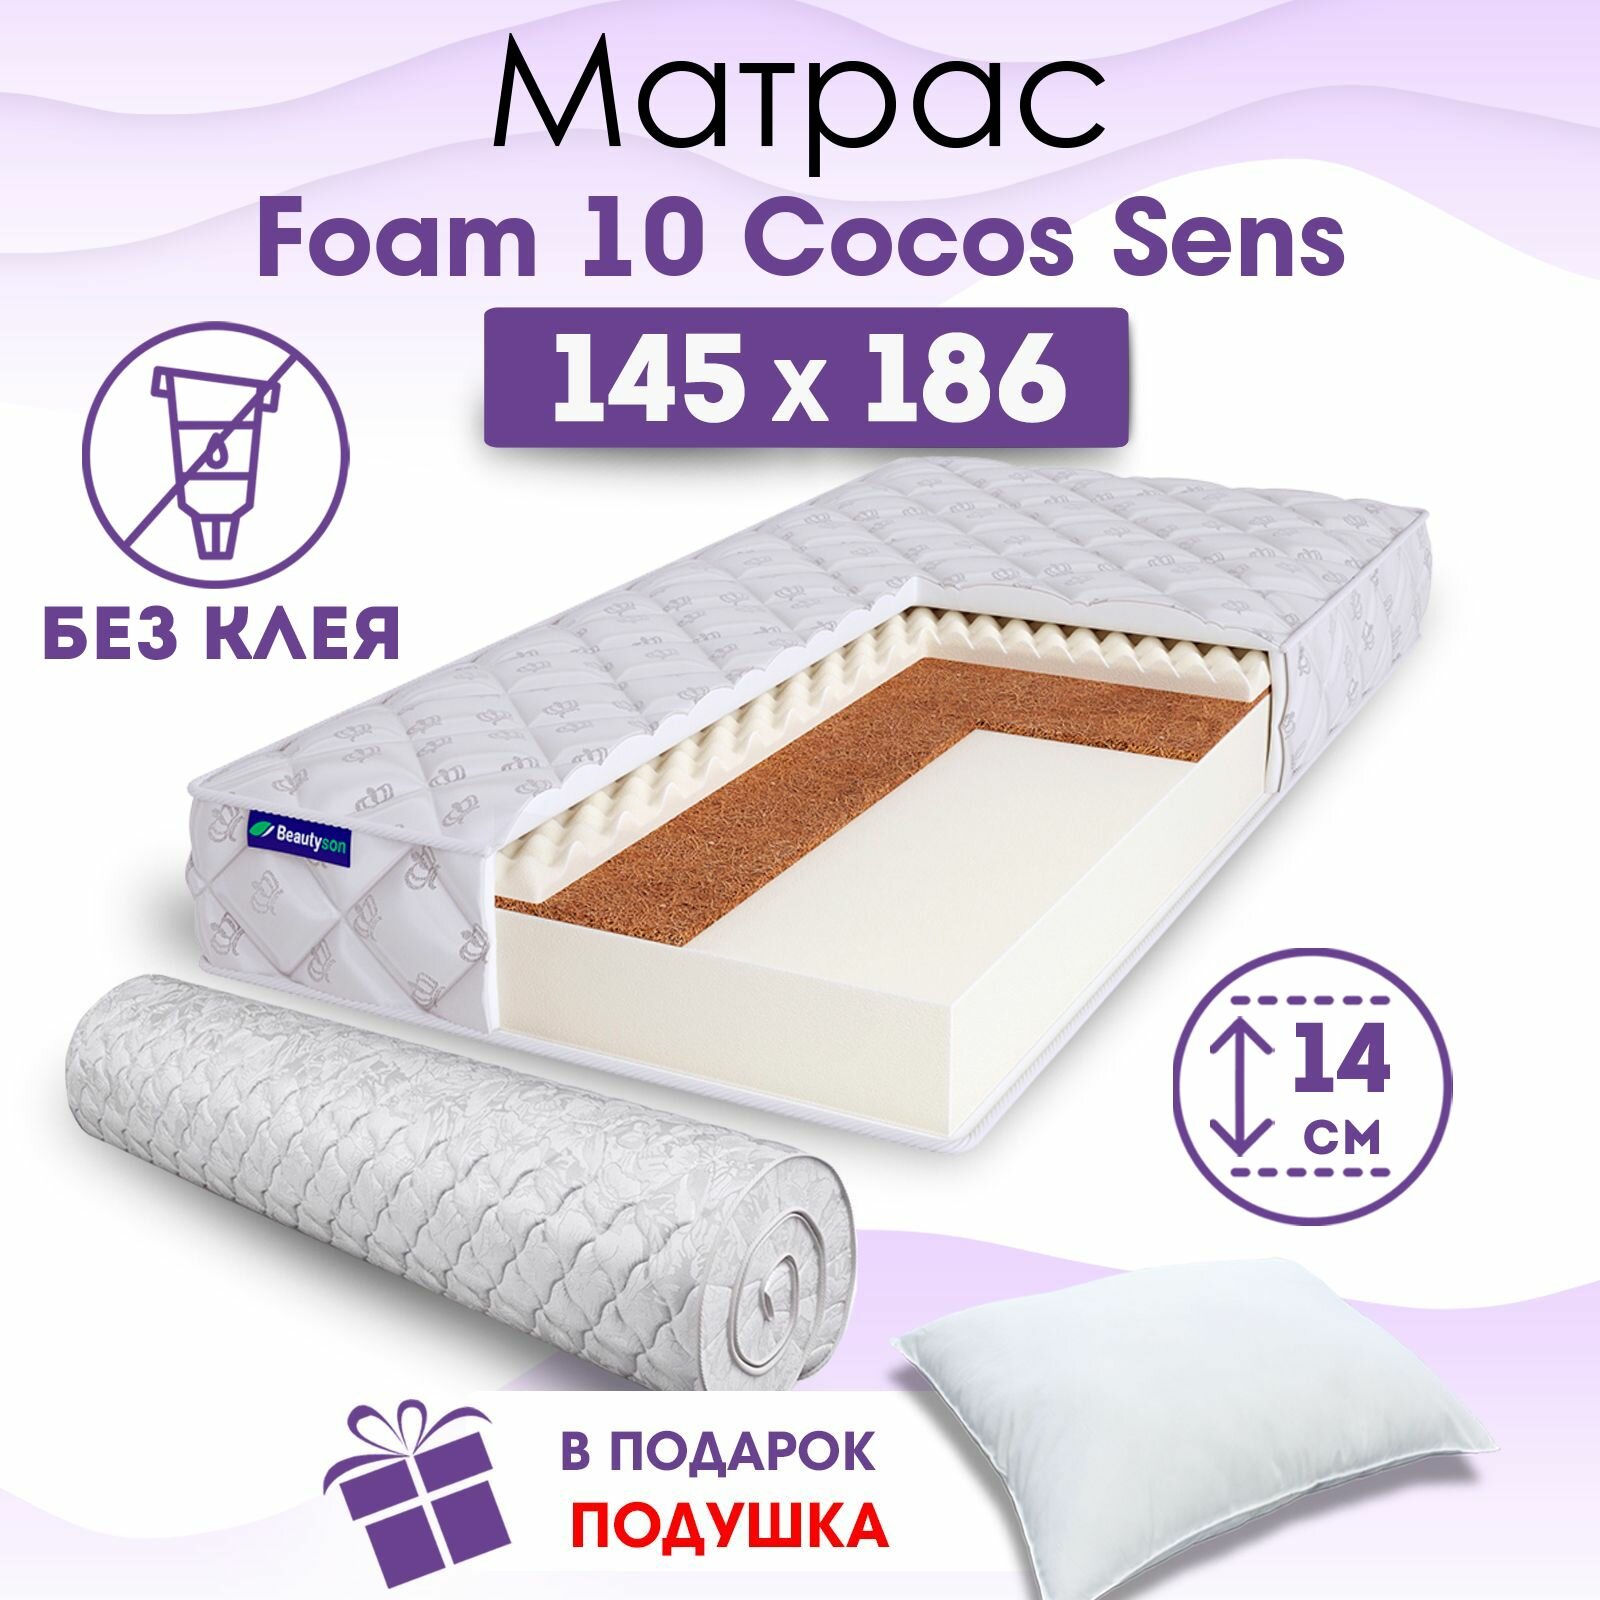 Ортопедический матрас Beautyson Foam 10 Cocos Sens без клея, 145х186, 14 см, беспружинный, двуспальный, на кровать, для дивана, умеренно мягкий